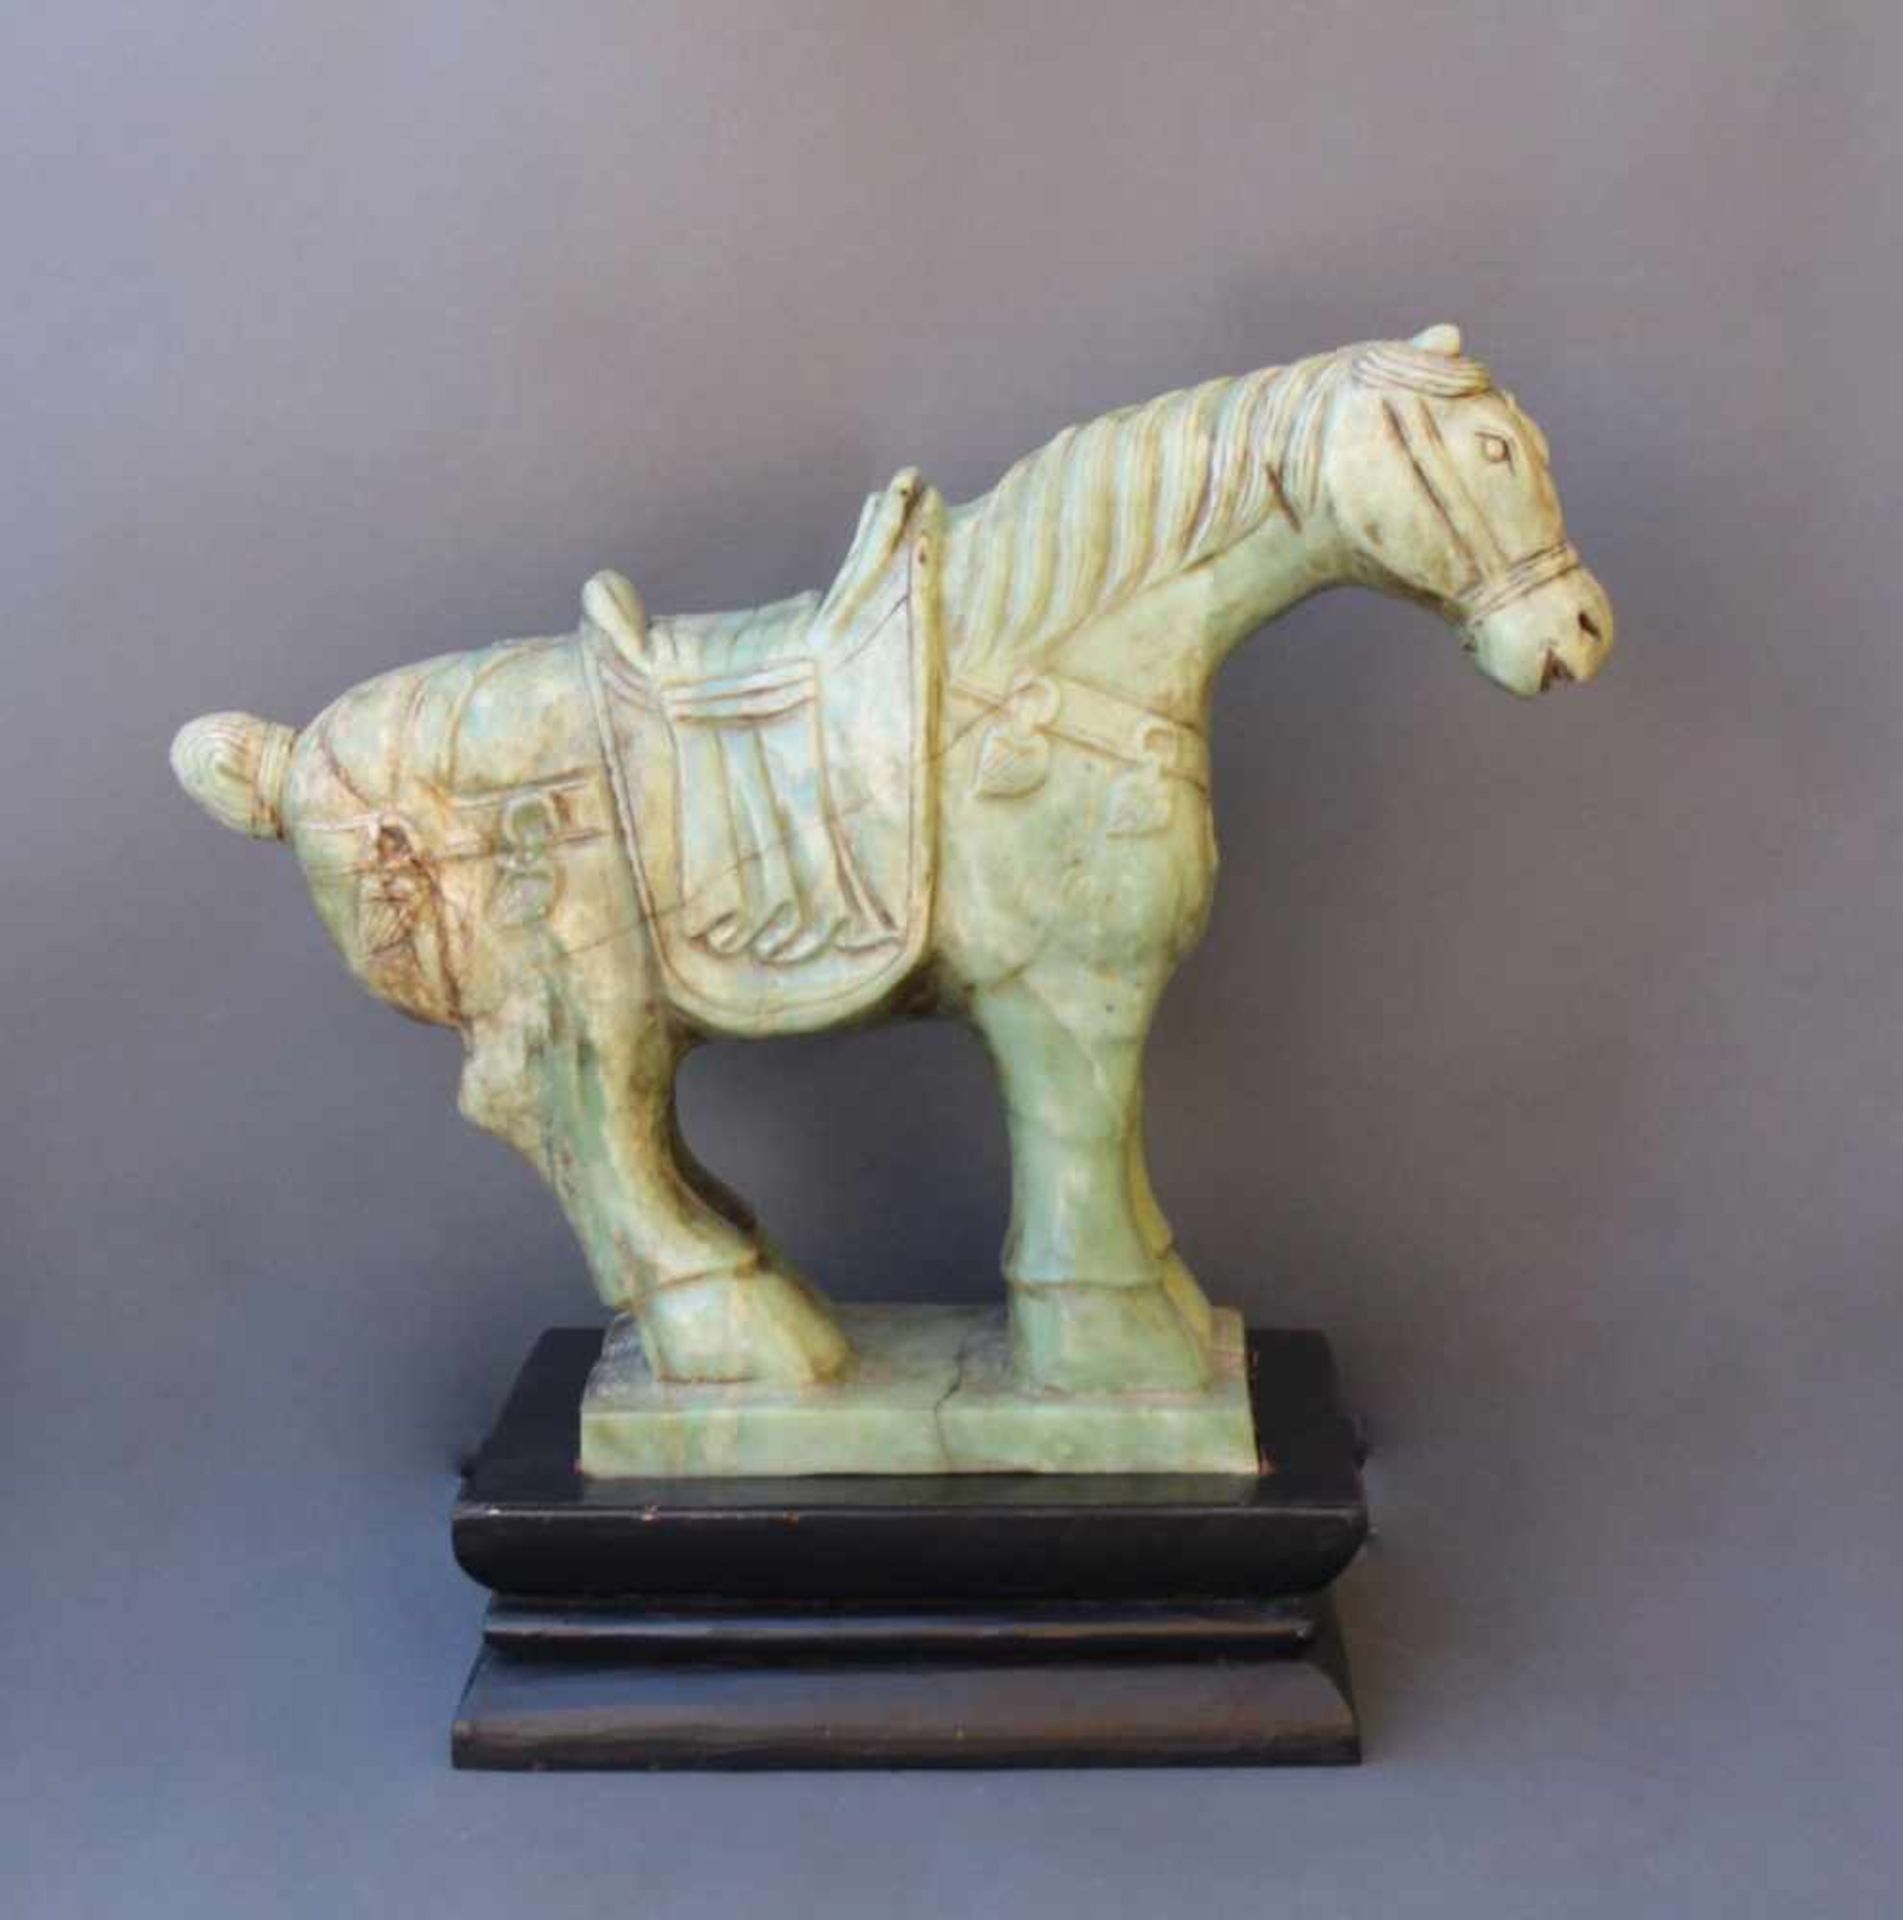 Sehr große Pferdefigur, Serpentin-JadeChina, 20. Jahrhundert, vollplastisch gearbeitetes Pferd mit - Image 2 of 6